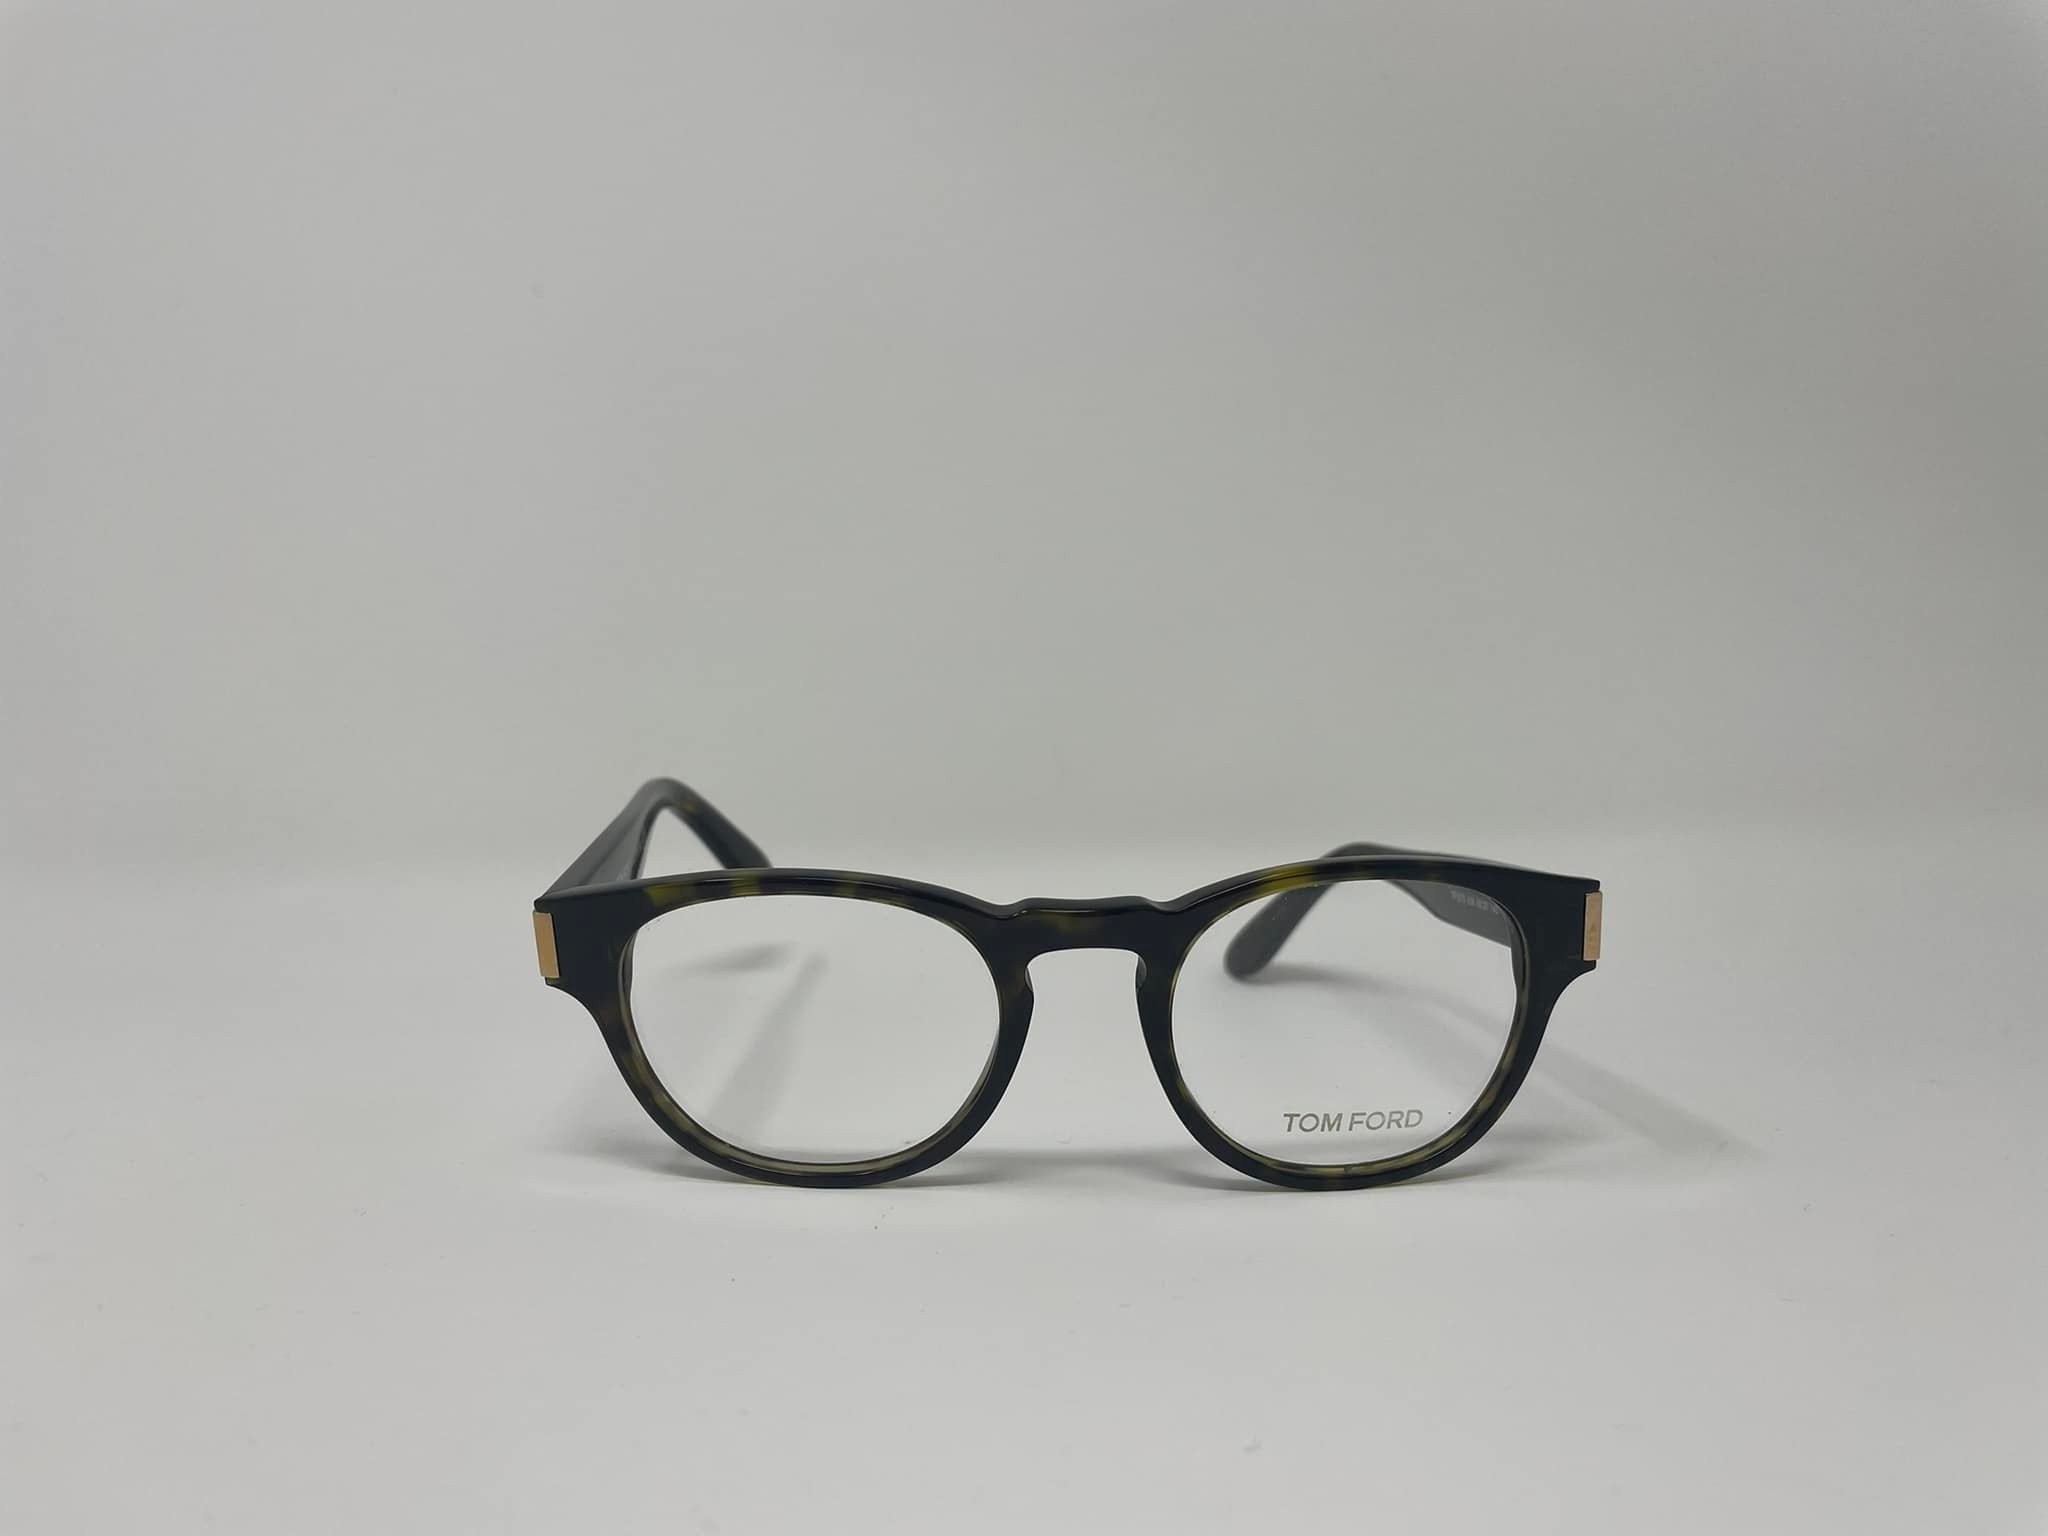 Tom Ford TF5275 men's eyeglasses